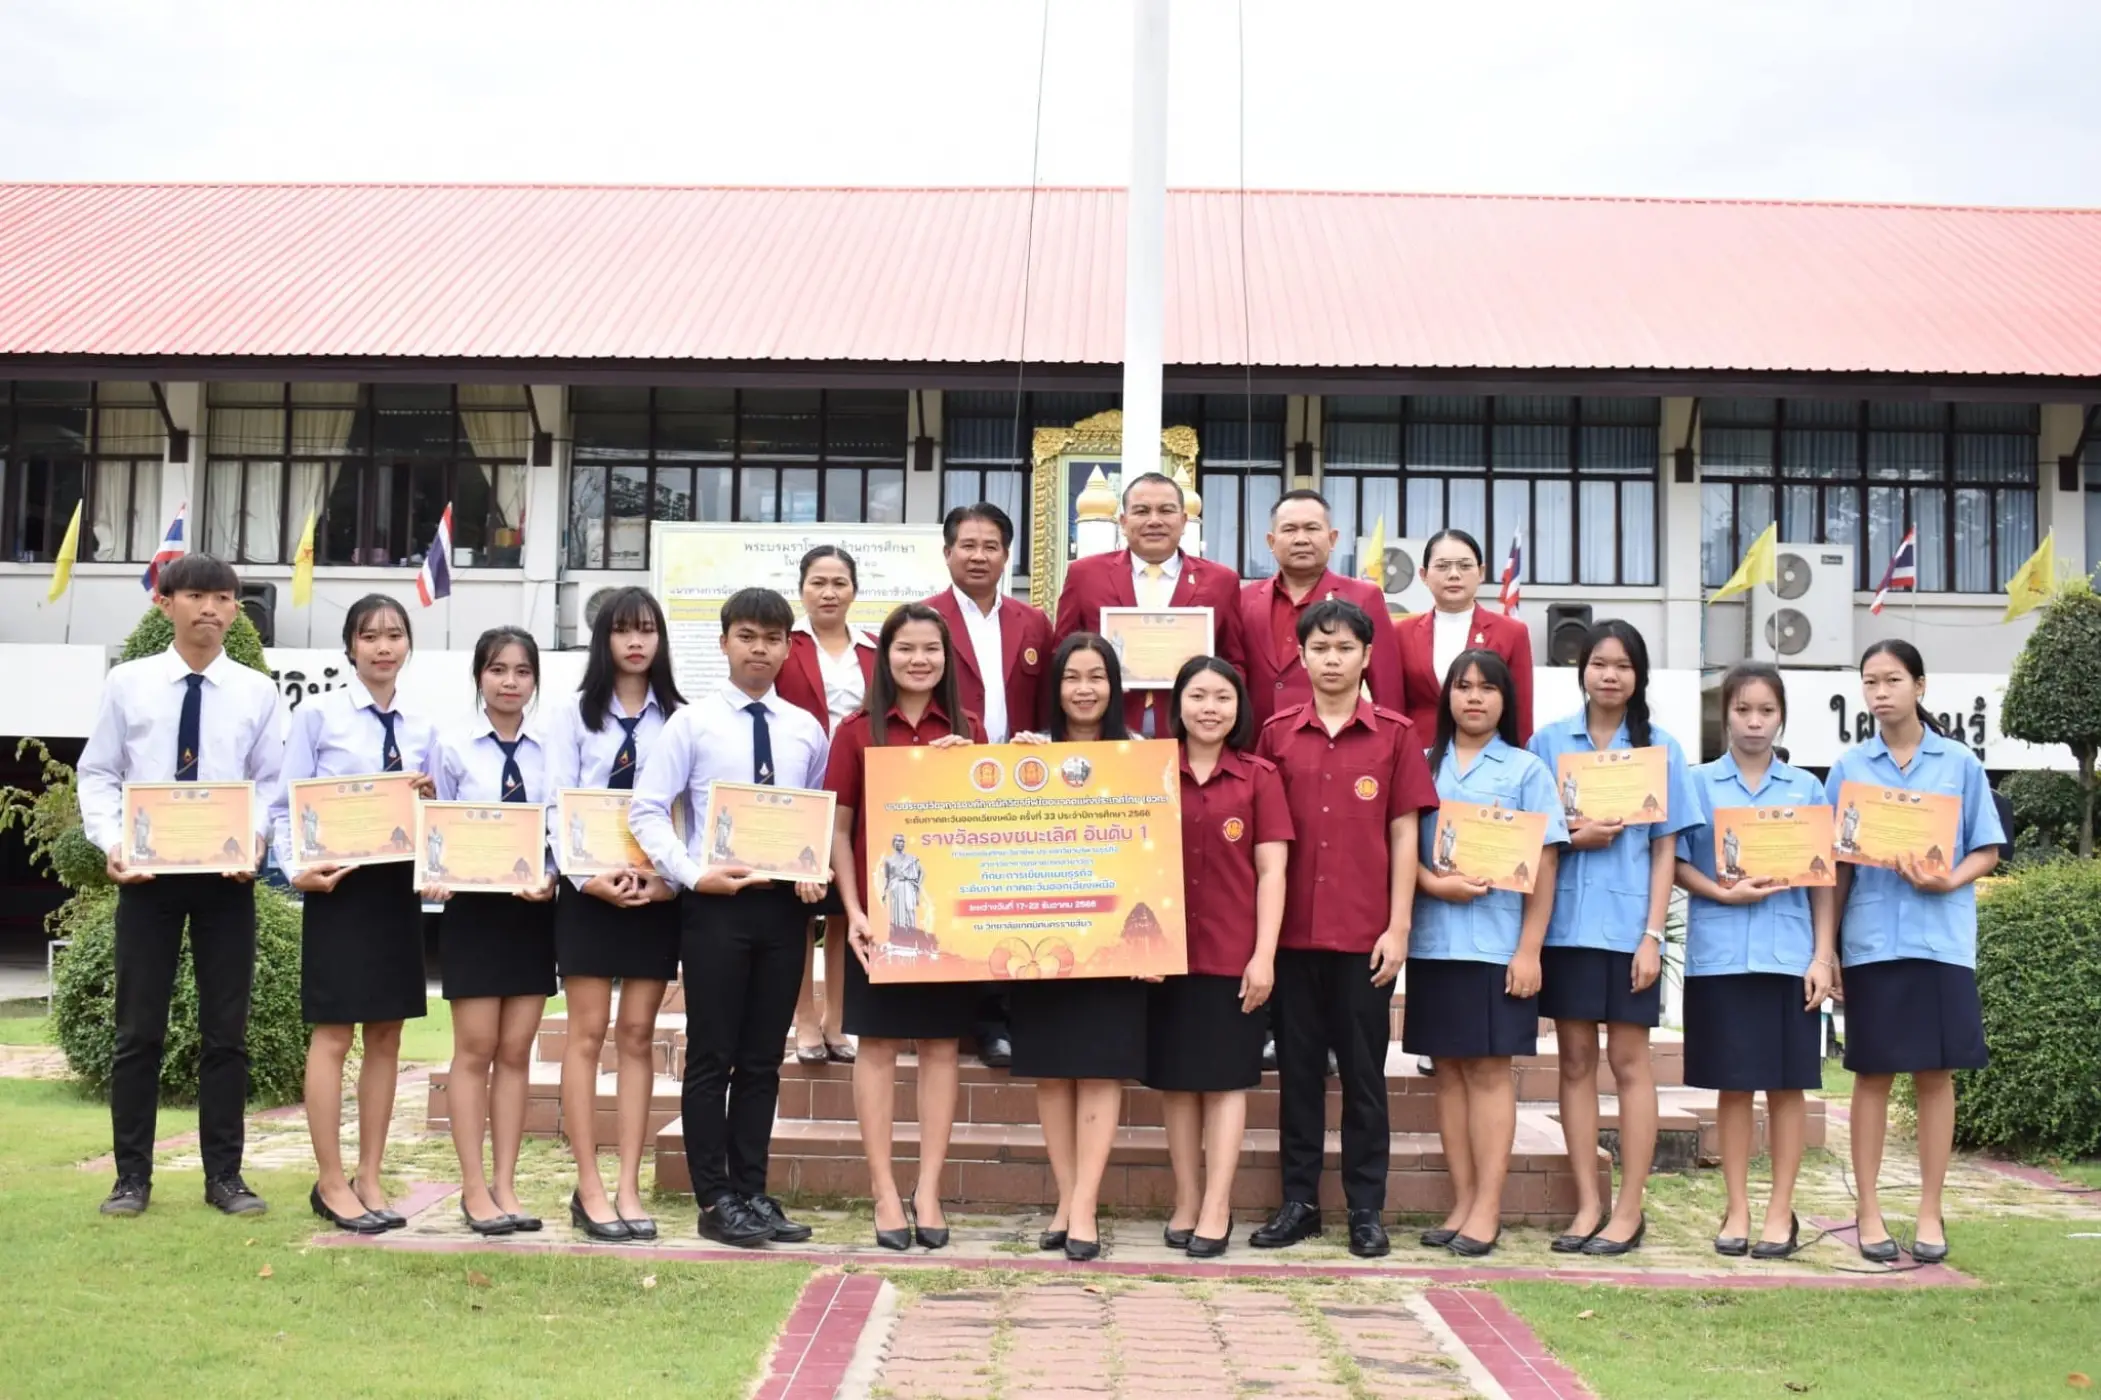 รางวัลรองชนะเลิศ อันดับ 1 มาตรฐานระดับเหรียญทอง ทักษะการเขียนแผนธุรกิจ ระดับ ปวส. งานประชุมองค์การนักวิชาชีพในอนาคตแห่งประเทศไทย (อวท.) ครั้งที่ 33 ระดับภาคตะวันออกเฉียงเหนือ ปีการศึกษา 2566 จ. นครราชสีมา 